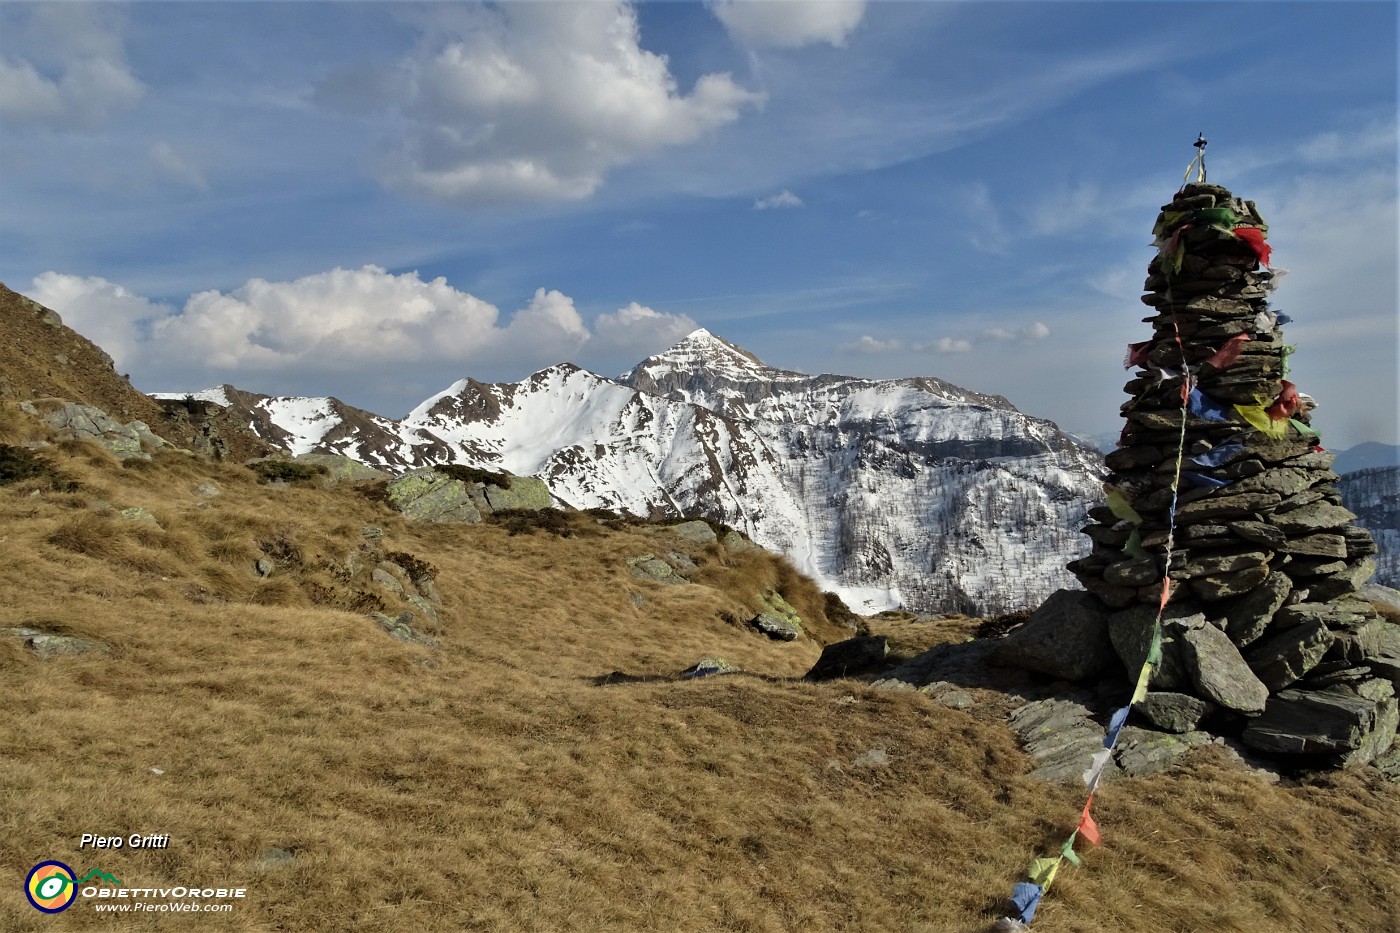 80 All'alto omone di pietre del Rif. Balicco con vista sul Monte Cavallo.JPG